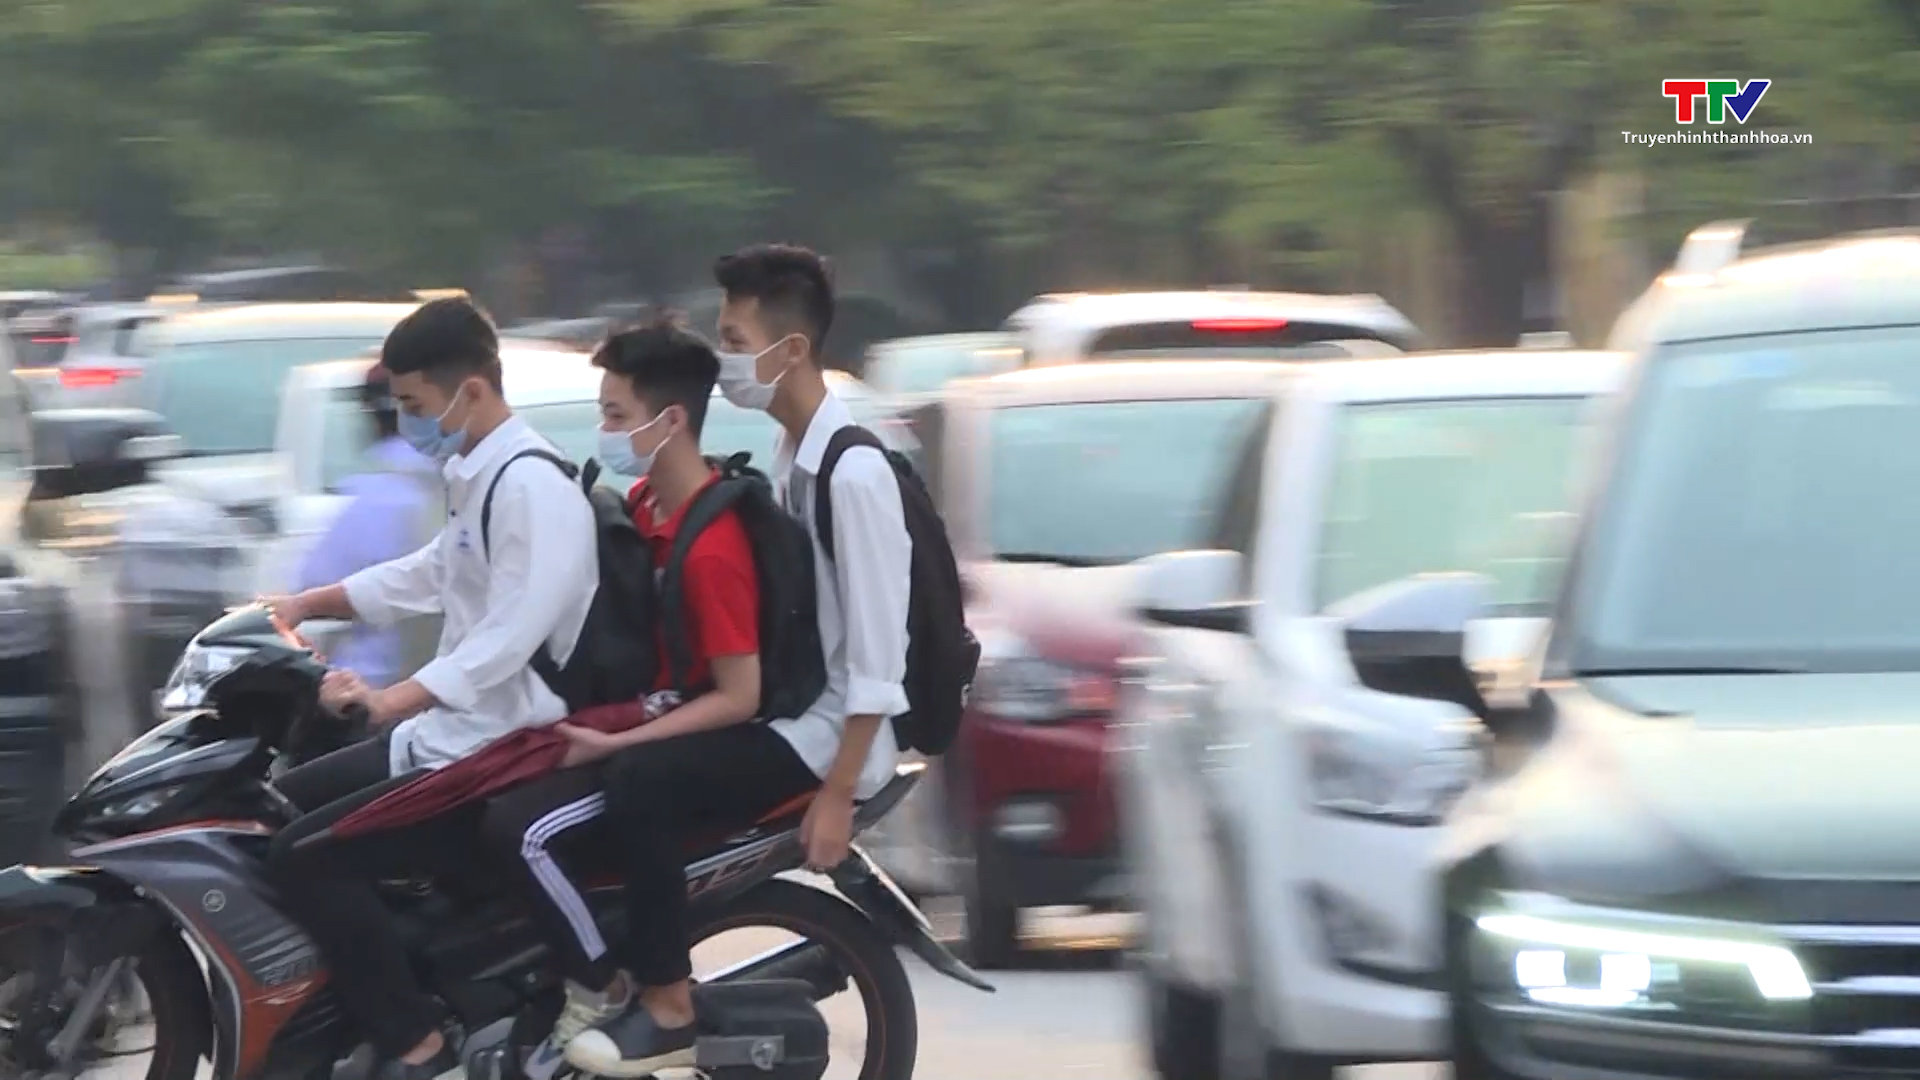 Cảnh báo nguy cơ tai nạn giao thông do học sinh đi xe máy khi chưa đủ tuổi - Ảnh 3.